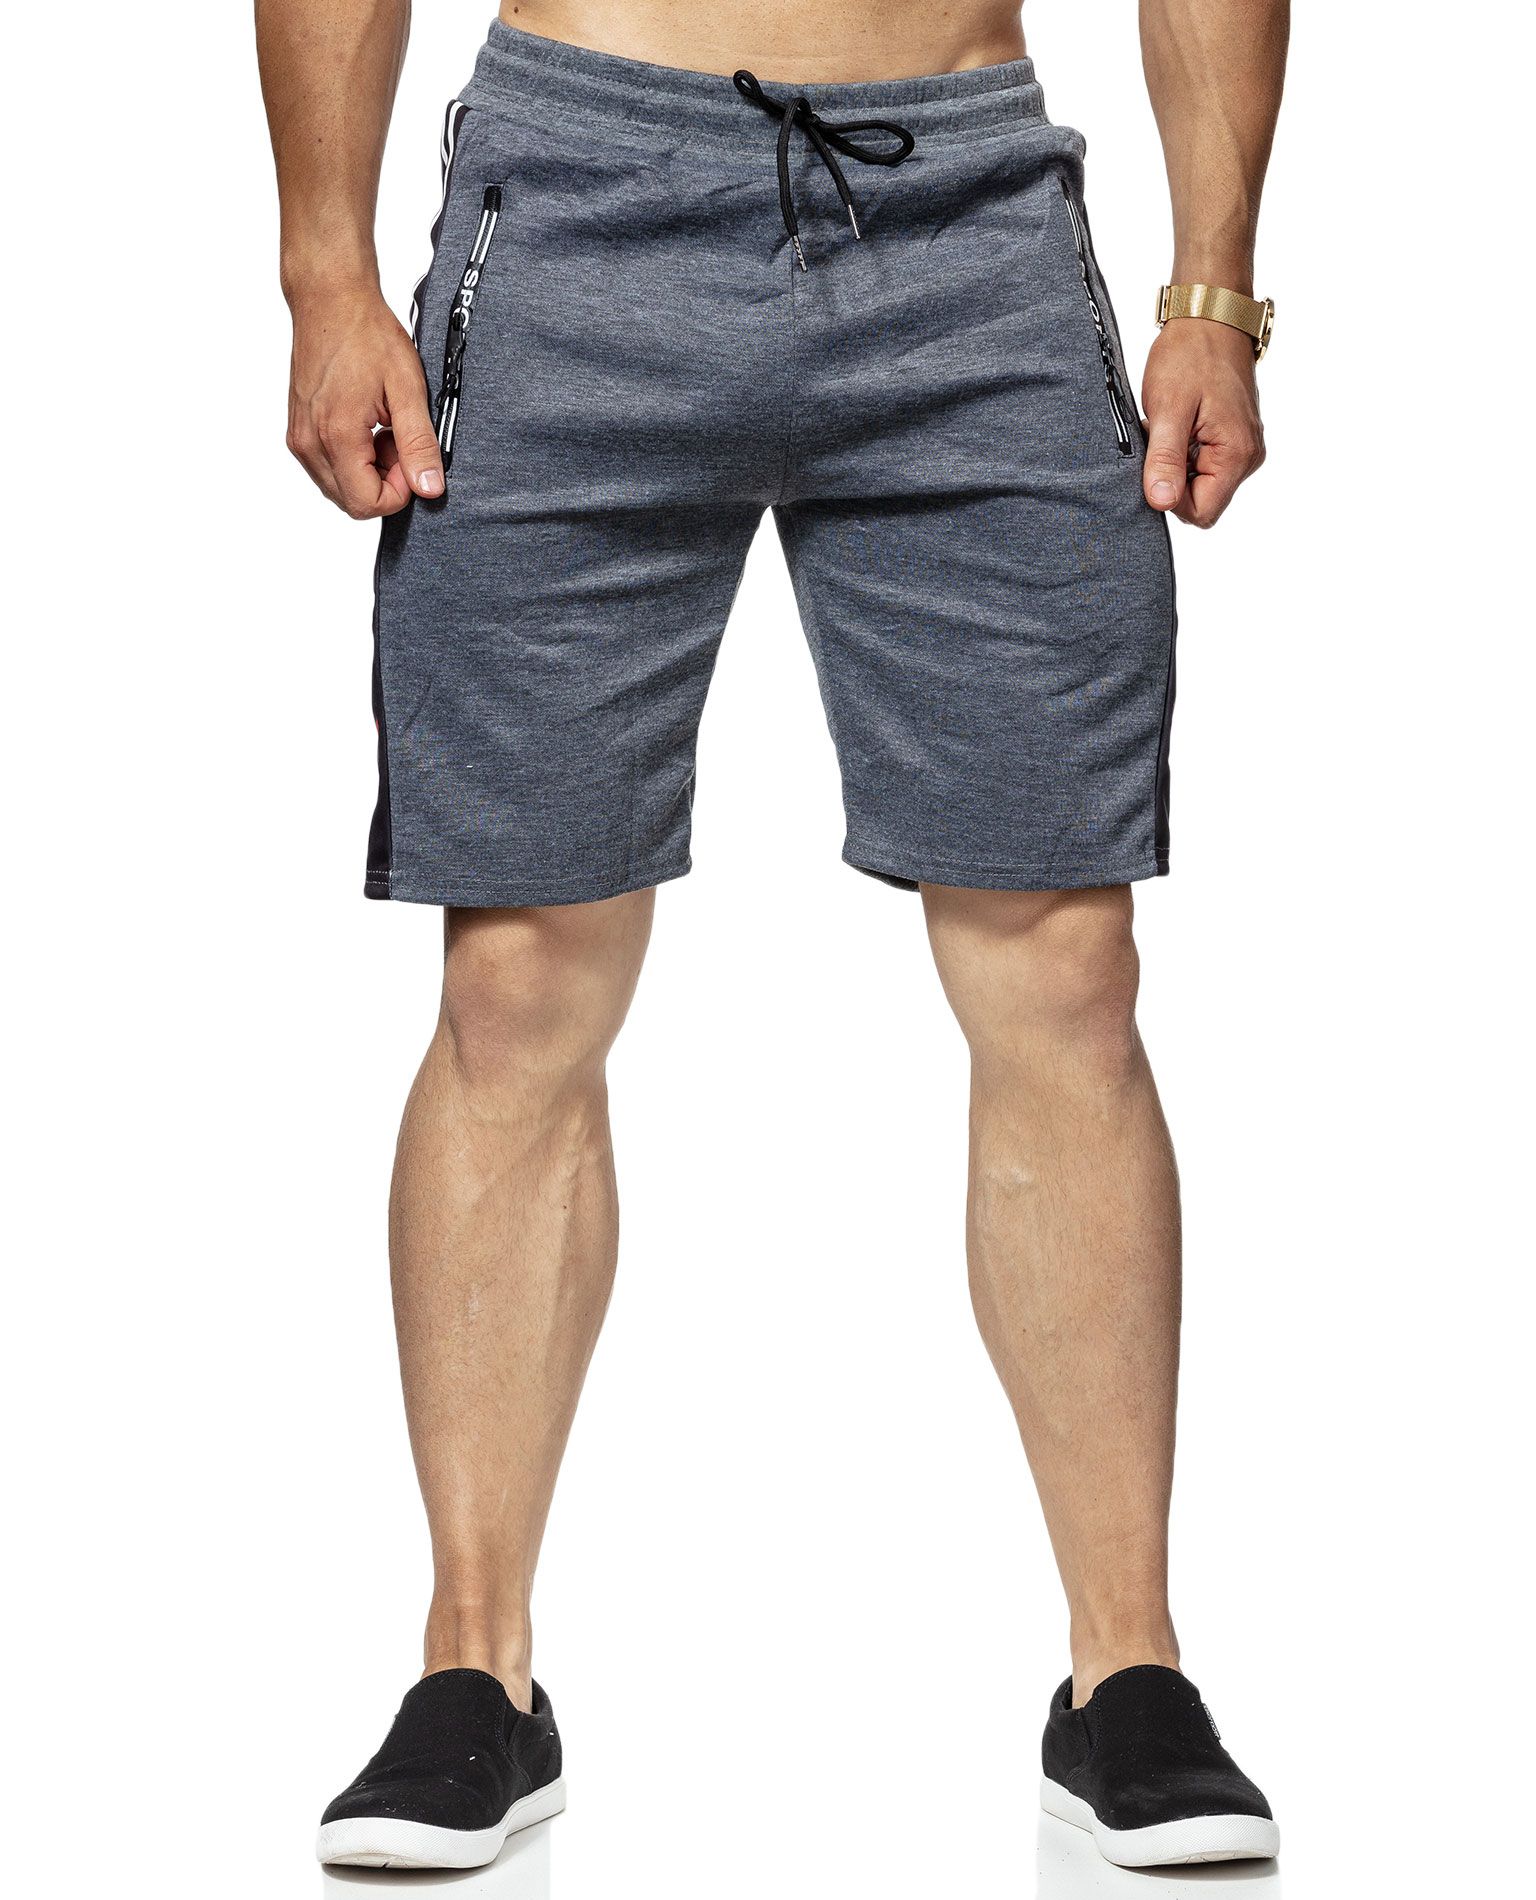 Palary Shorts Light Grey Jerone - 2818 - Shorts - Jerone.com